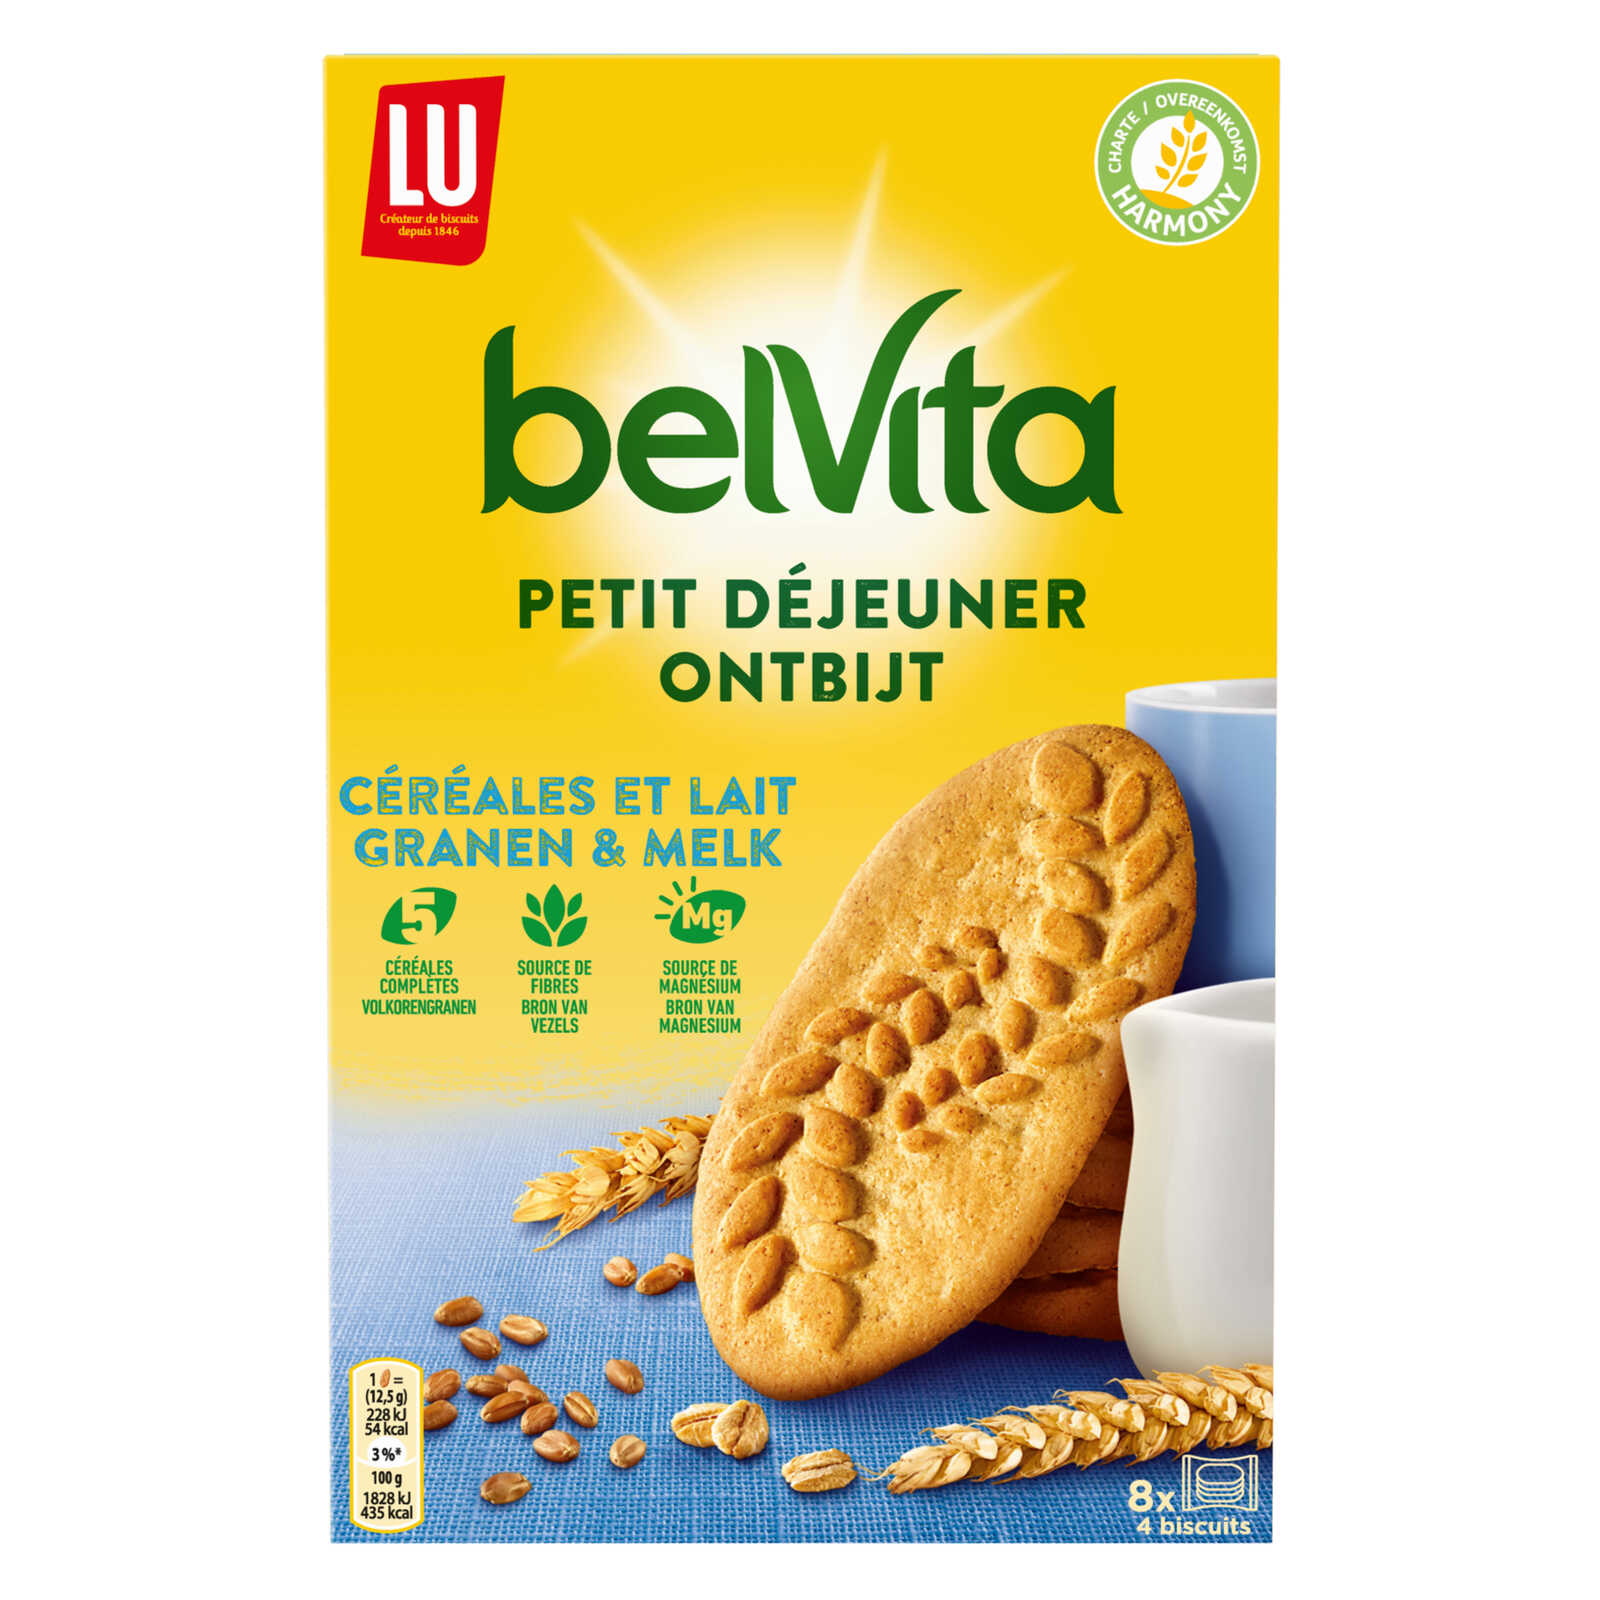 LU-Belvita